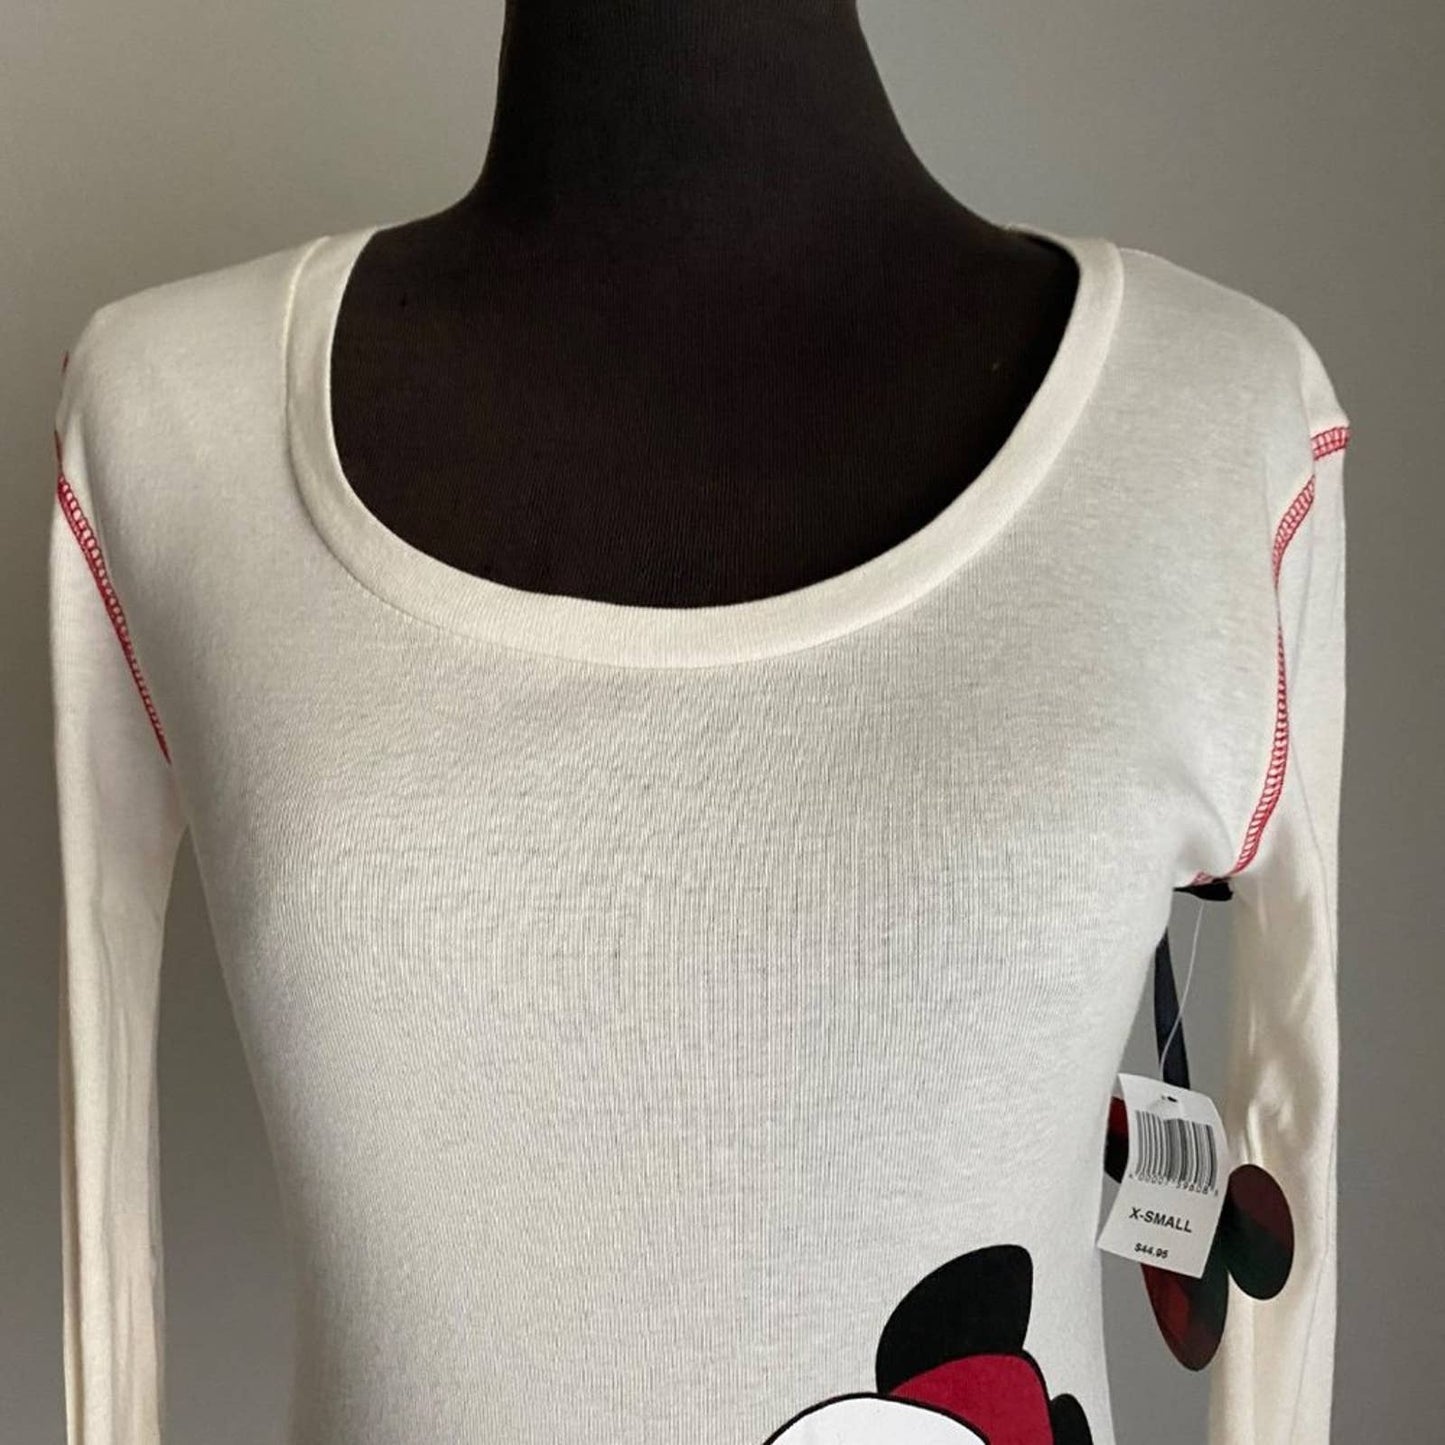 Disney Park sz XS Long sleeve scoop neck Mickey Mouse shirt NWT